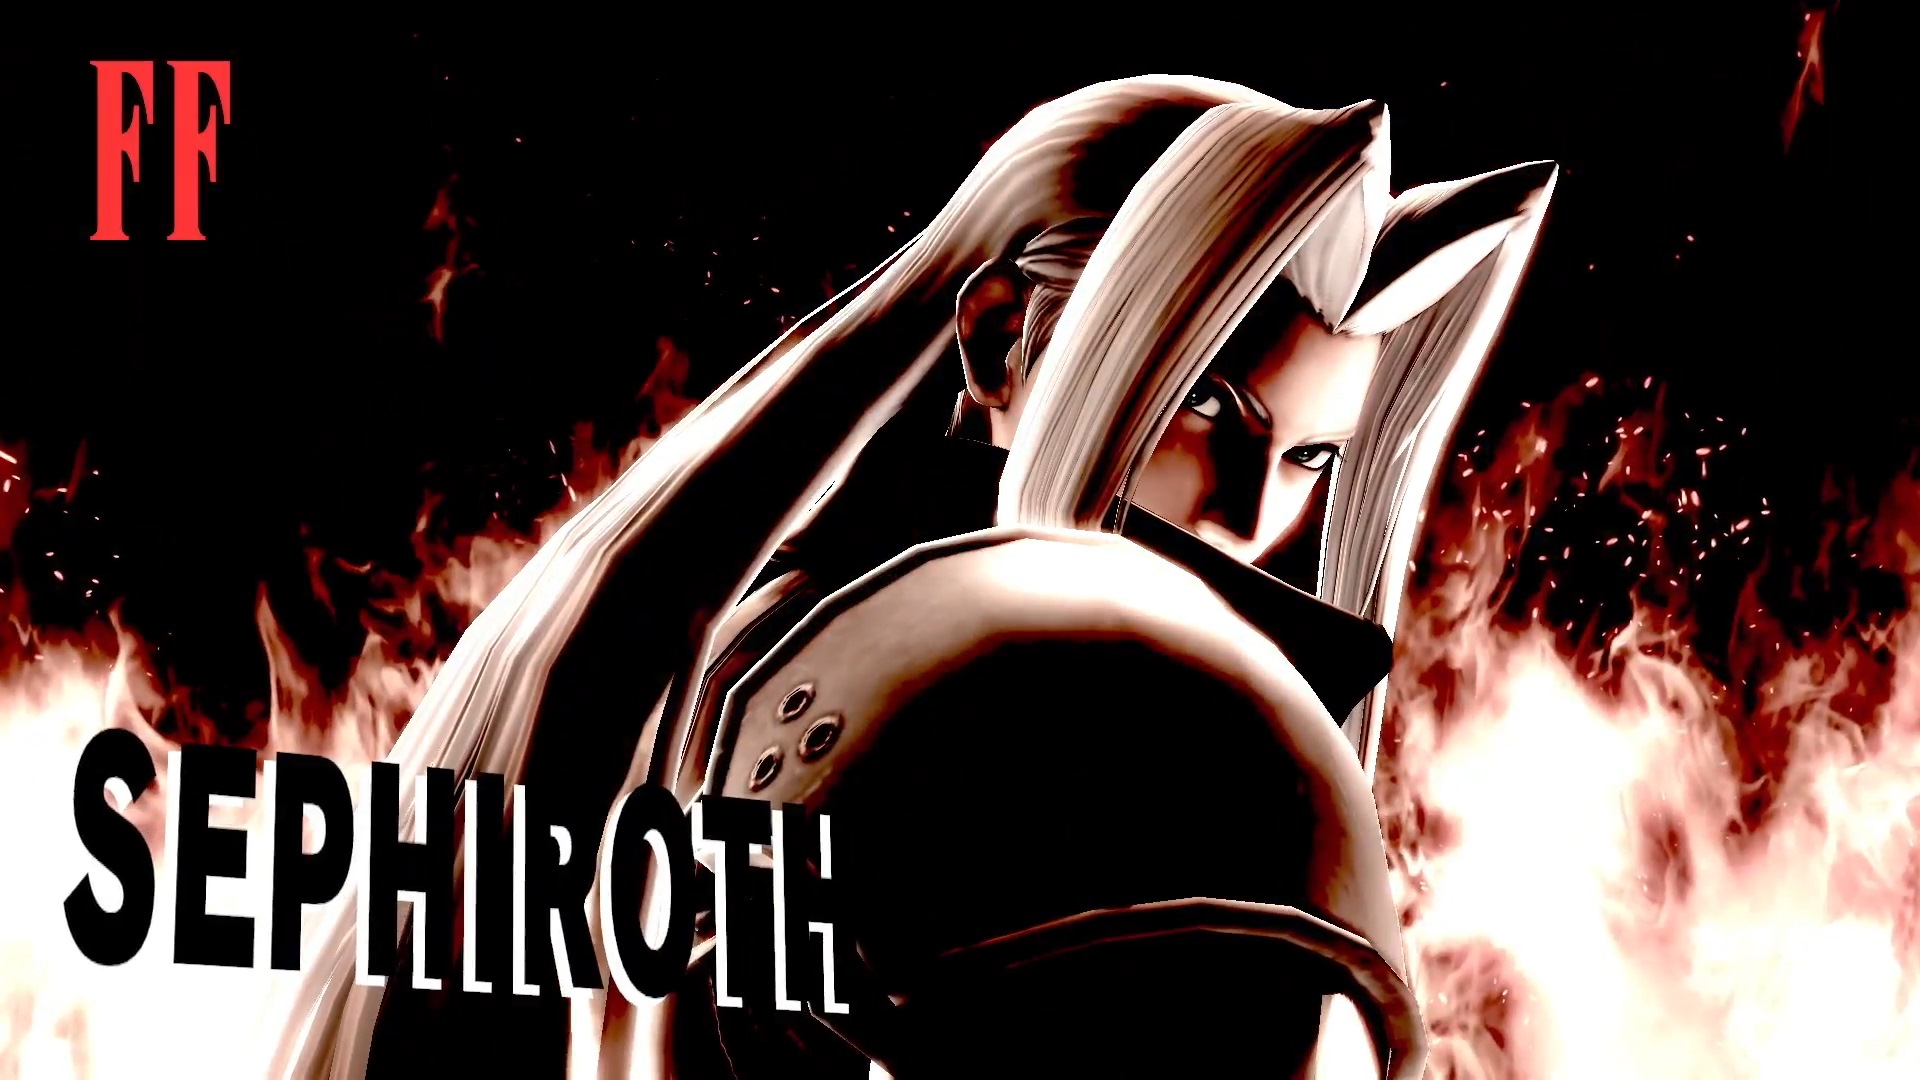 Tela de vitória de Sephiroth em Super Smash Bros. Ultimate